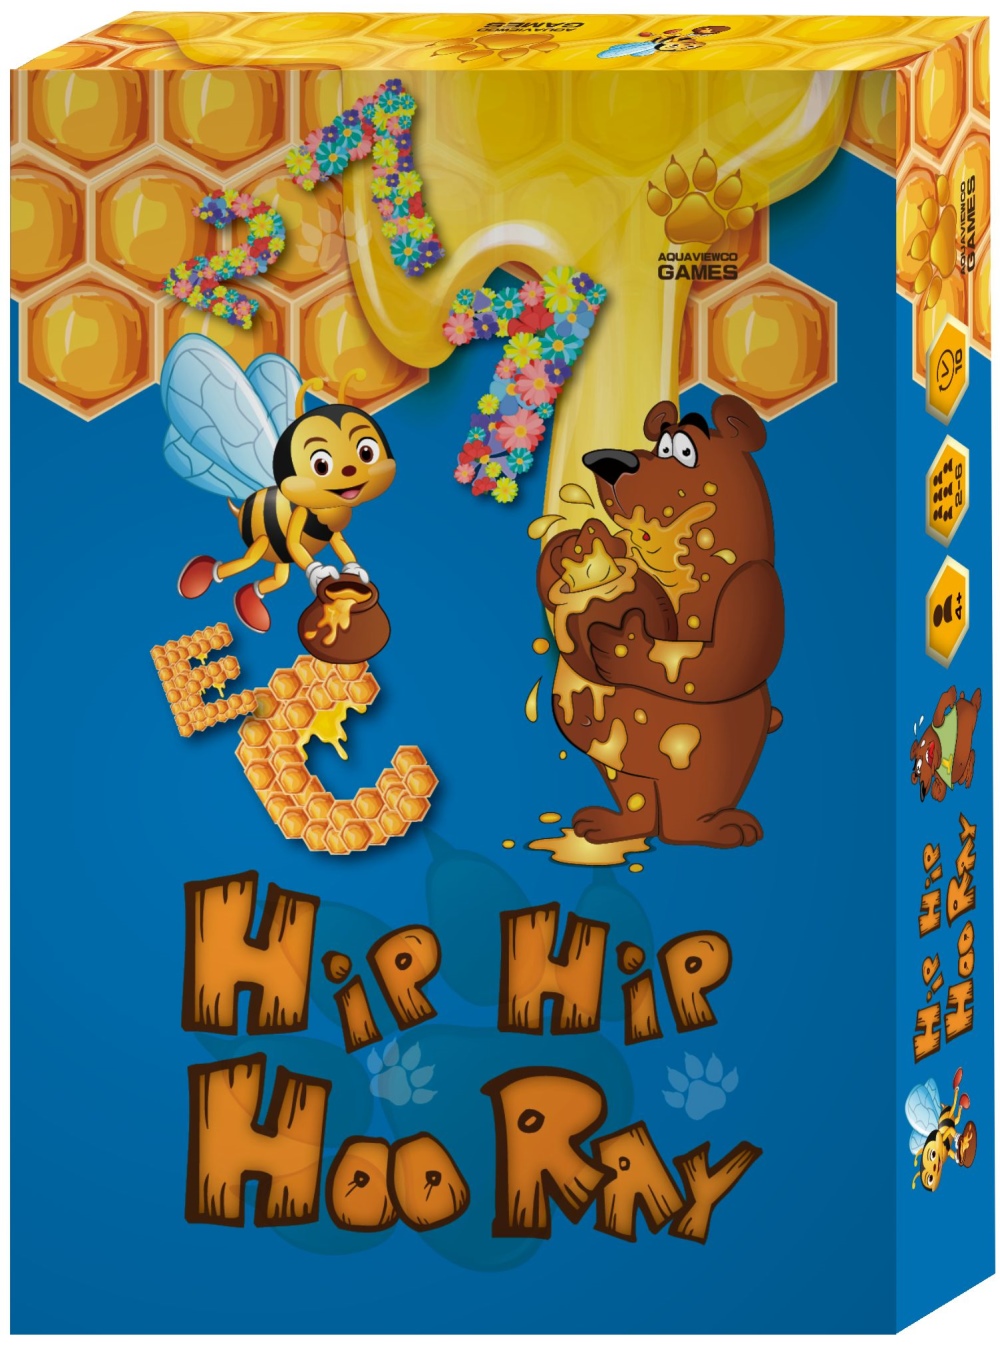 HIP HIP HOORAY 超High桌遊：數字、英文、顏色、心臟病、接龍多變玩法